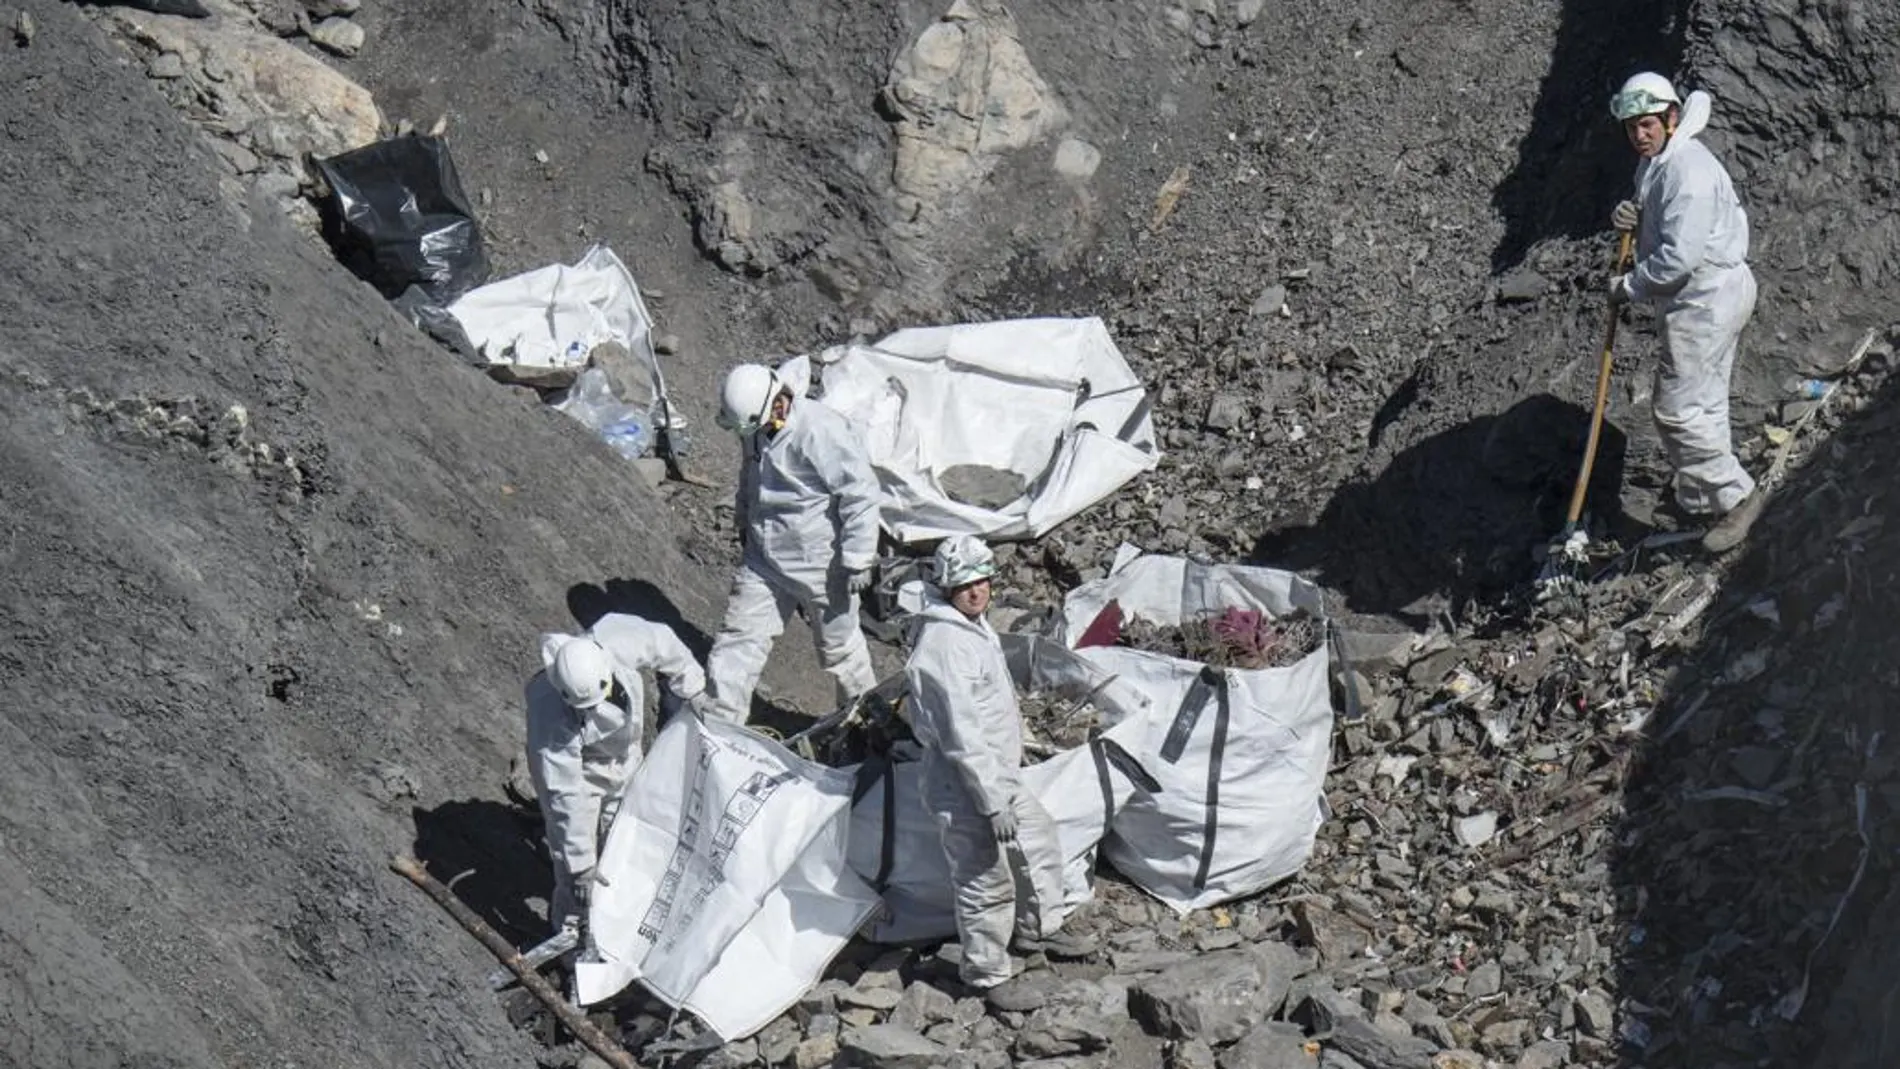 Los servicios de emergencias recogen los restos del avión y descontaminan la zona